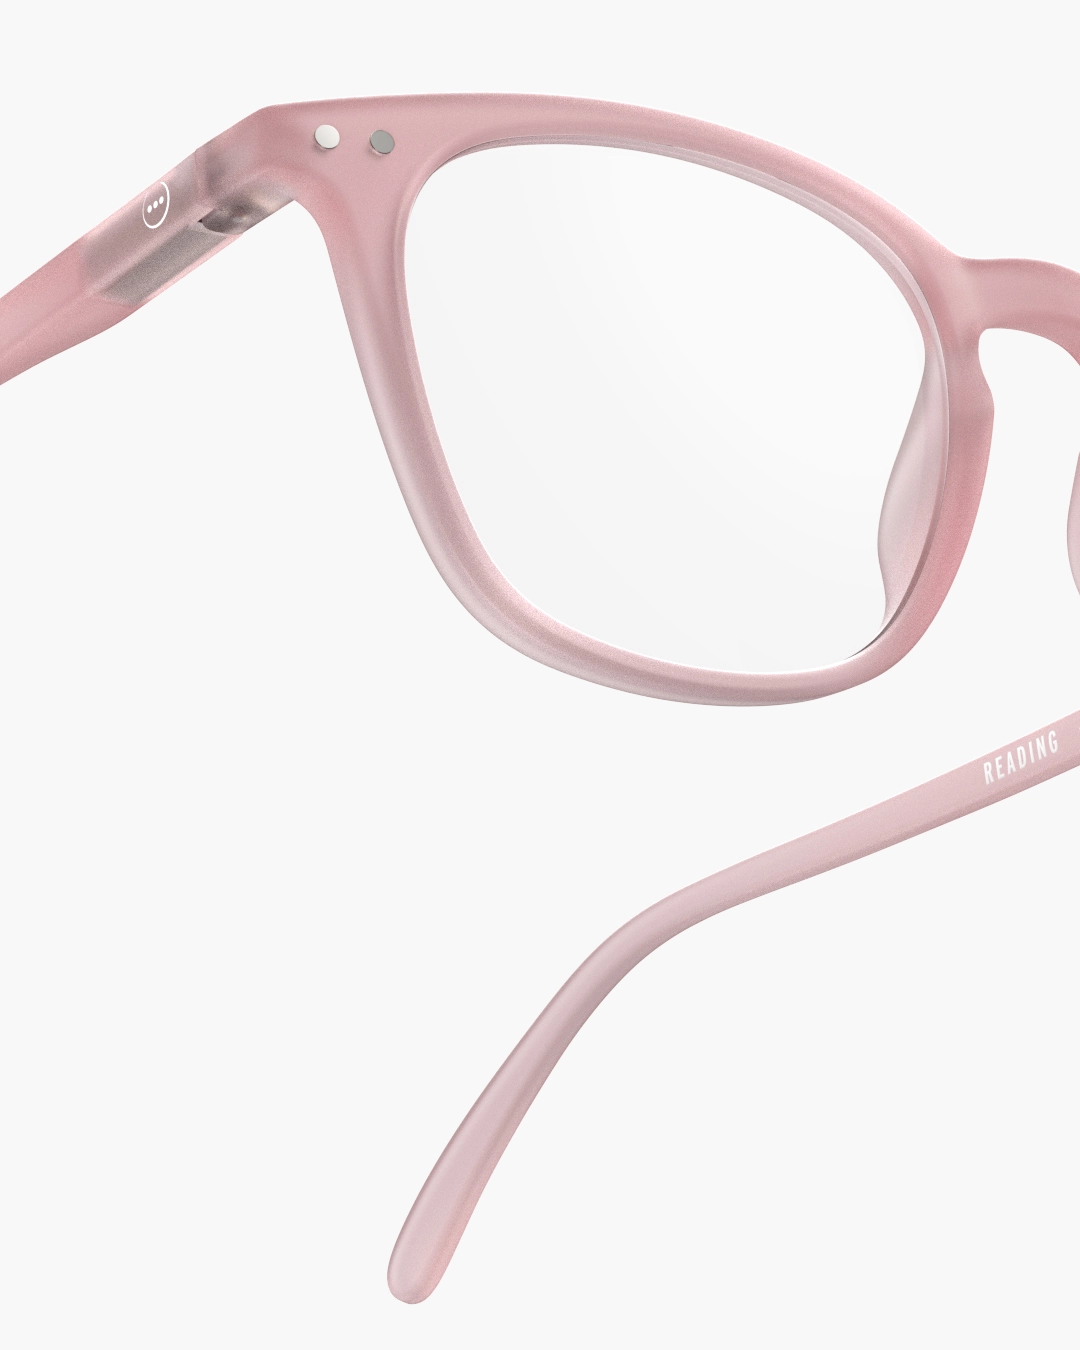 IZIPIZI #E Pink Reading Glasses